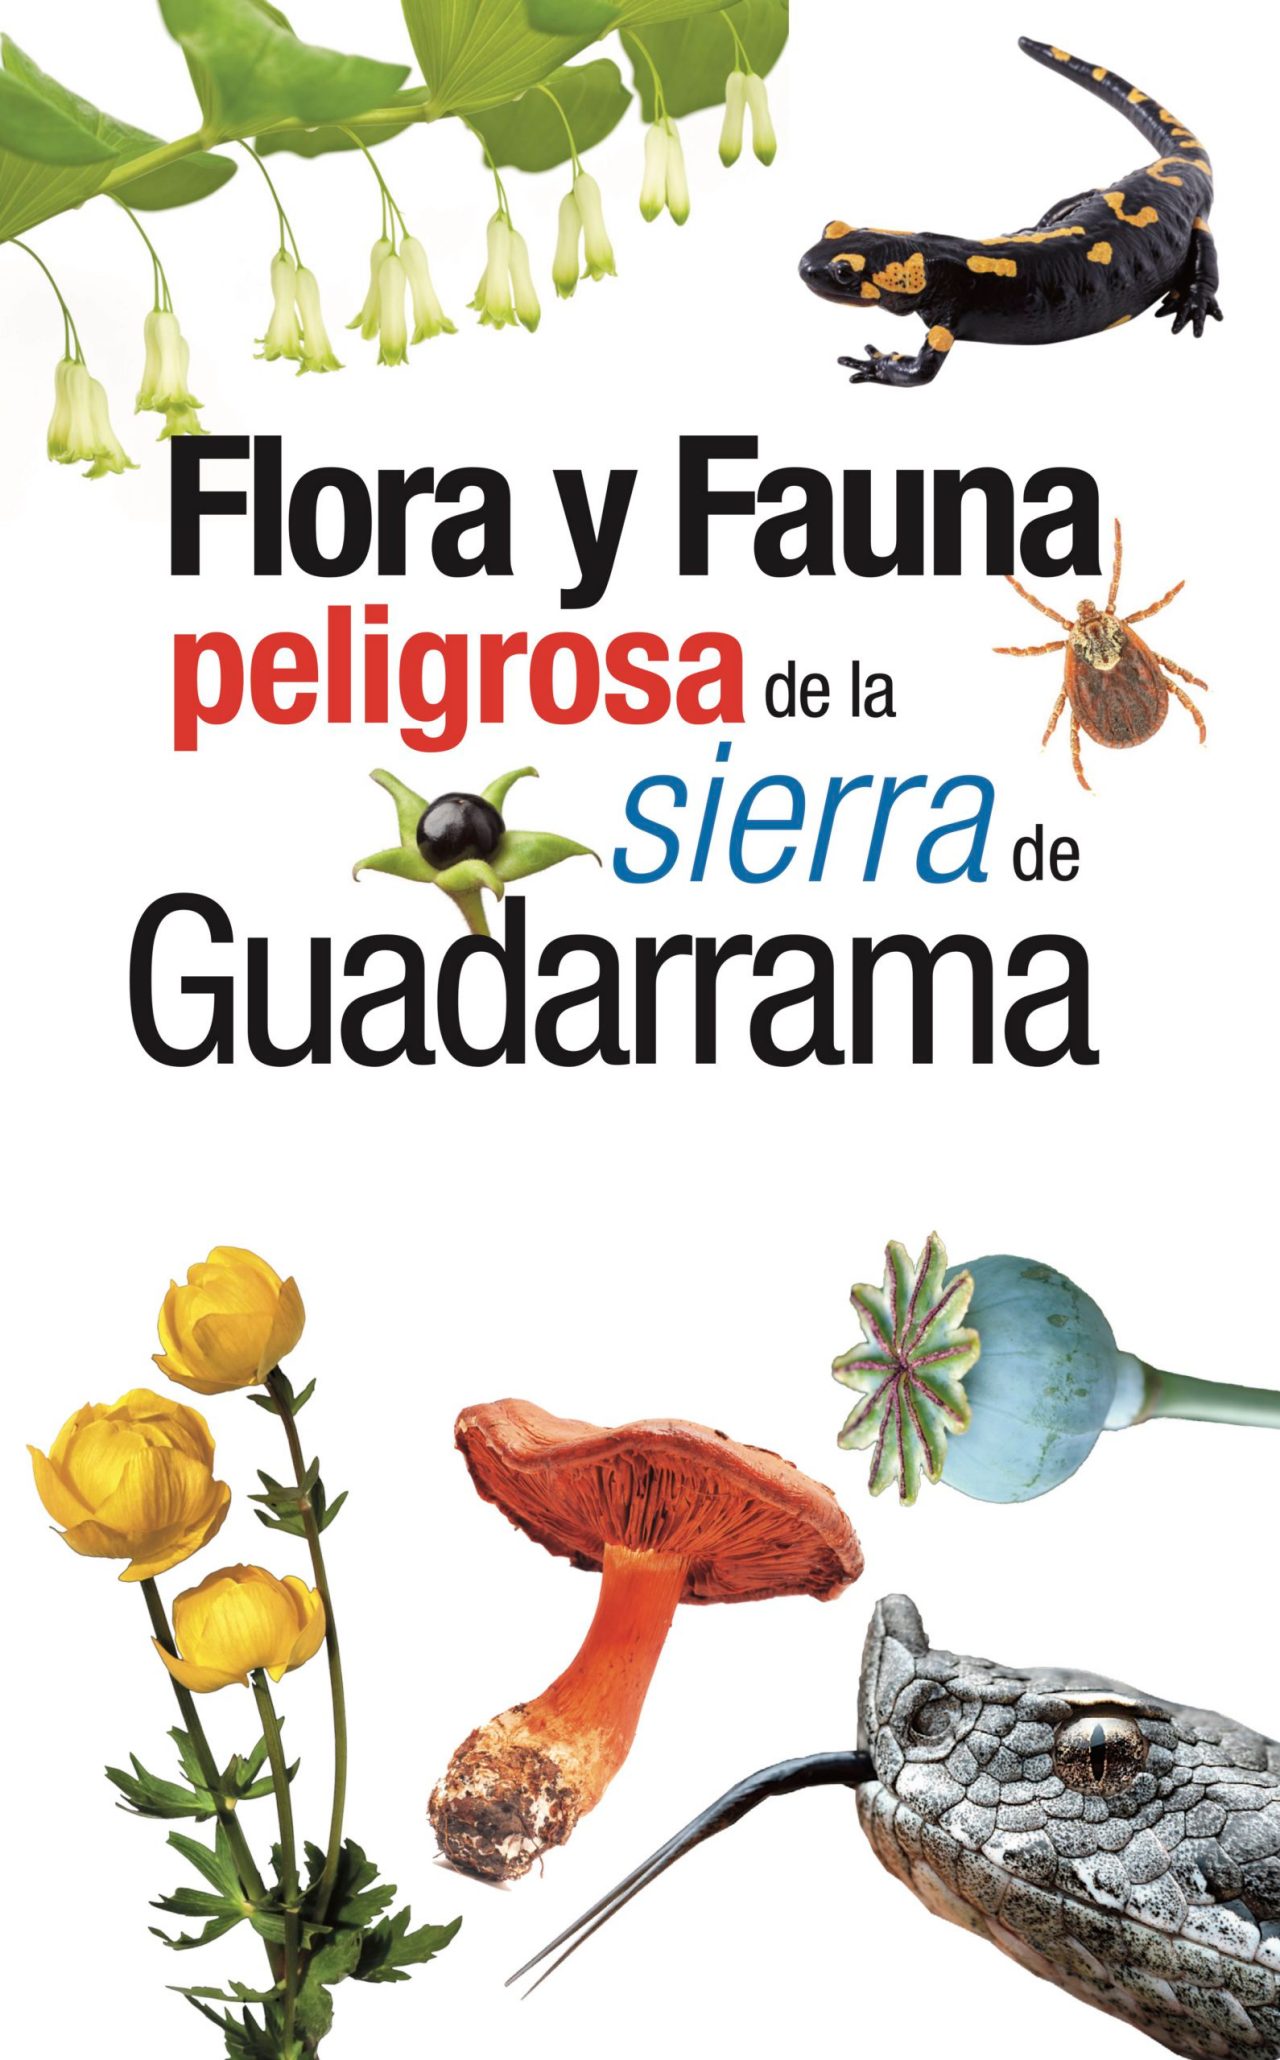 Flora y fauna peligrosa de la sierra de Guadarrama